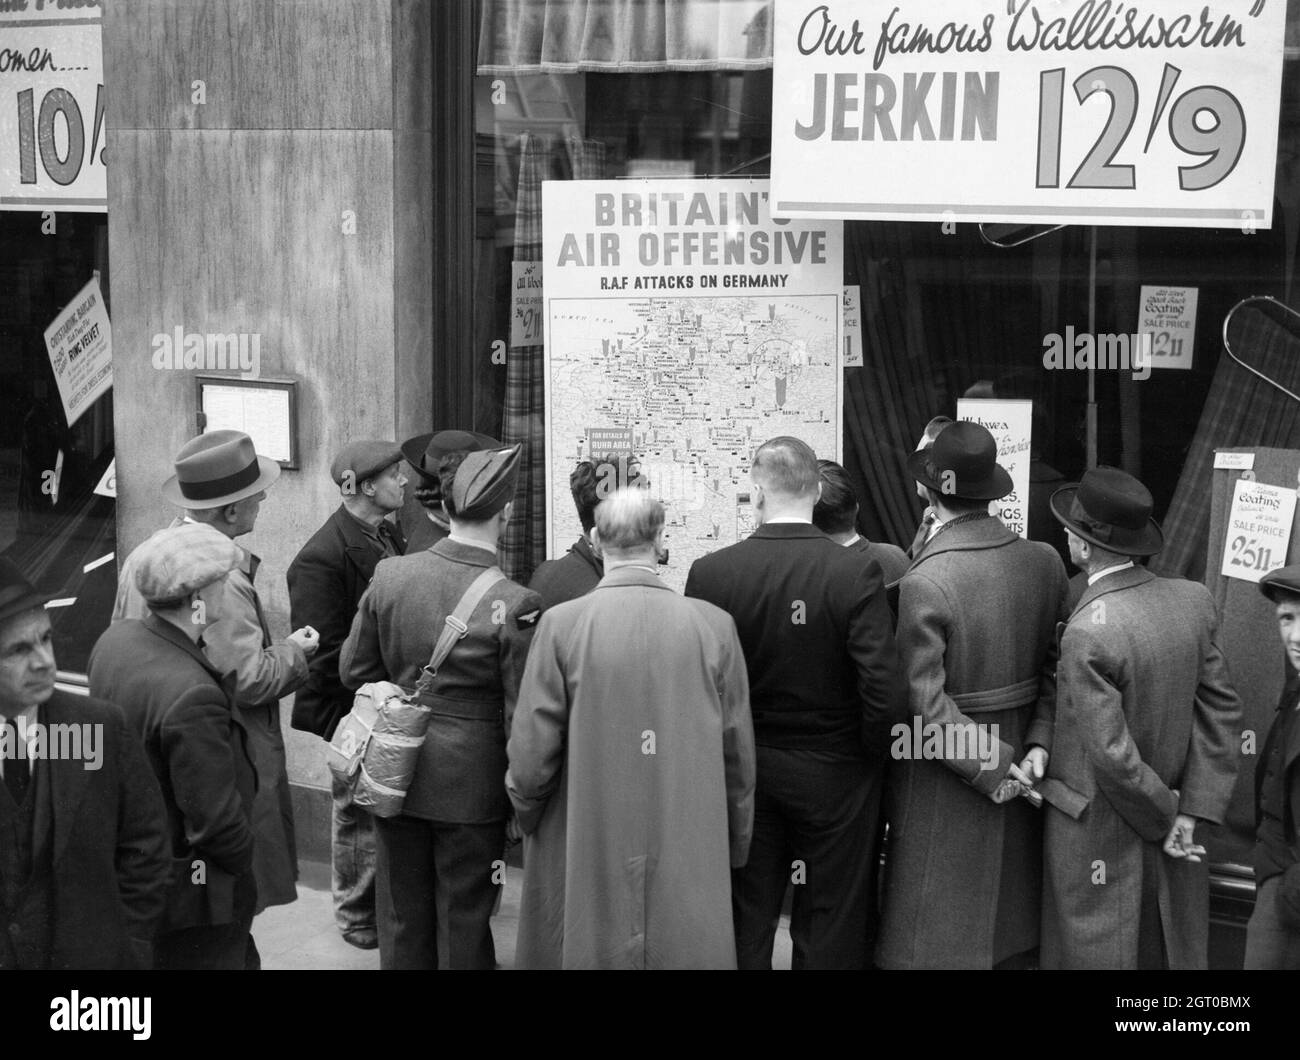 Un aviatore britannico è tra un gruppo di civili affollato intorno alla finestra di un negozio a Holborn, Londra, per guardare una mappa visualizzata che è intitolato 'British Air Offensive' e mostra oltre 700 incursioni da parte della Royal Air Force sulla Germania. Foto Stock